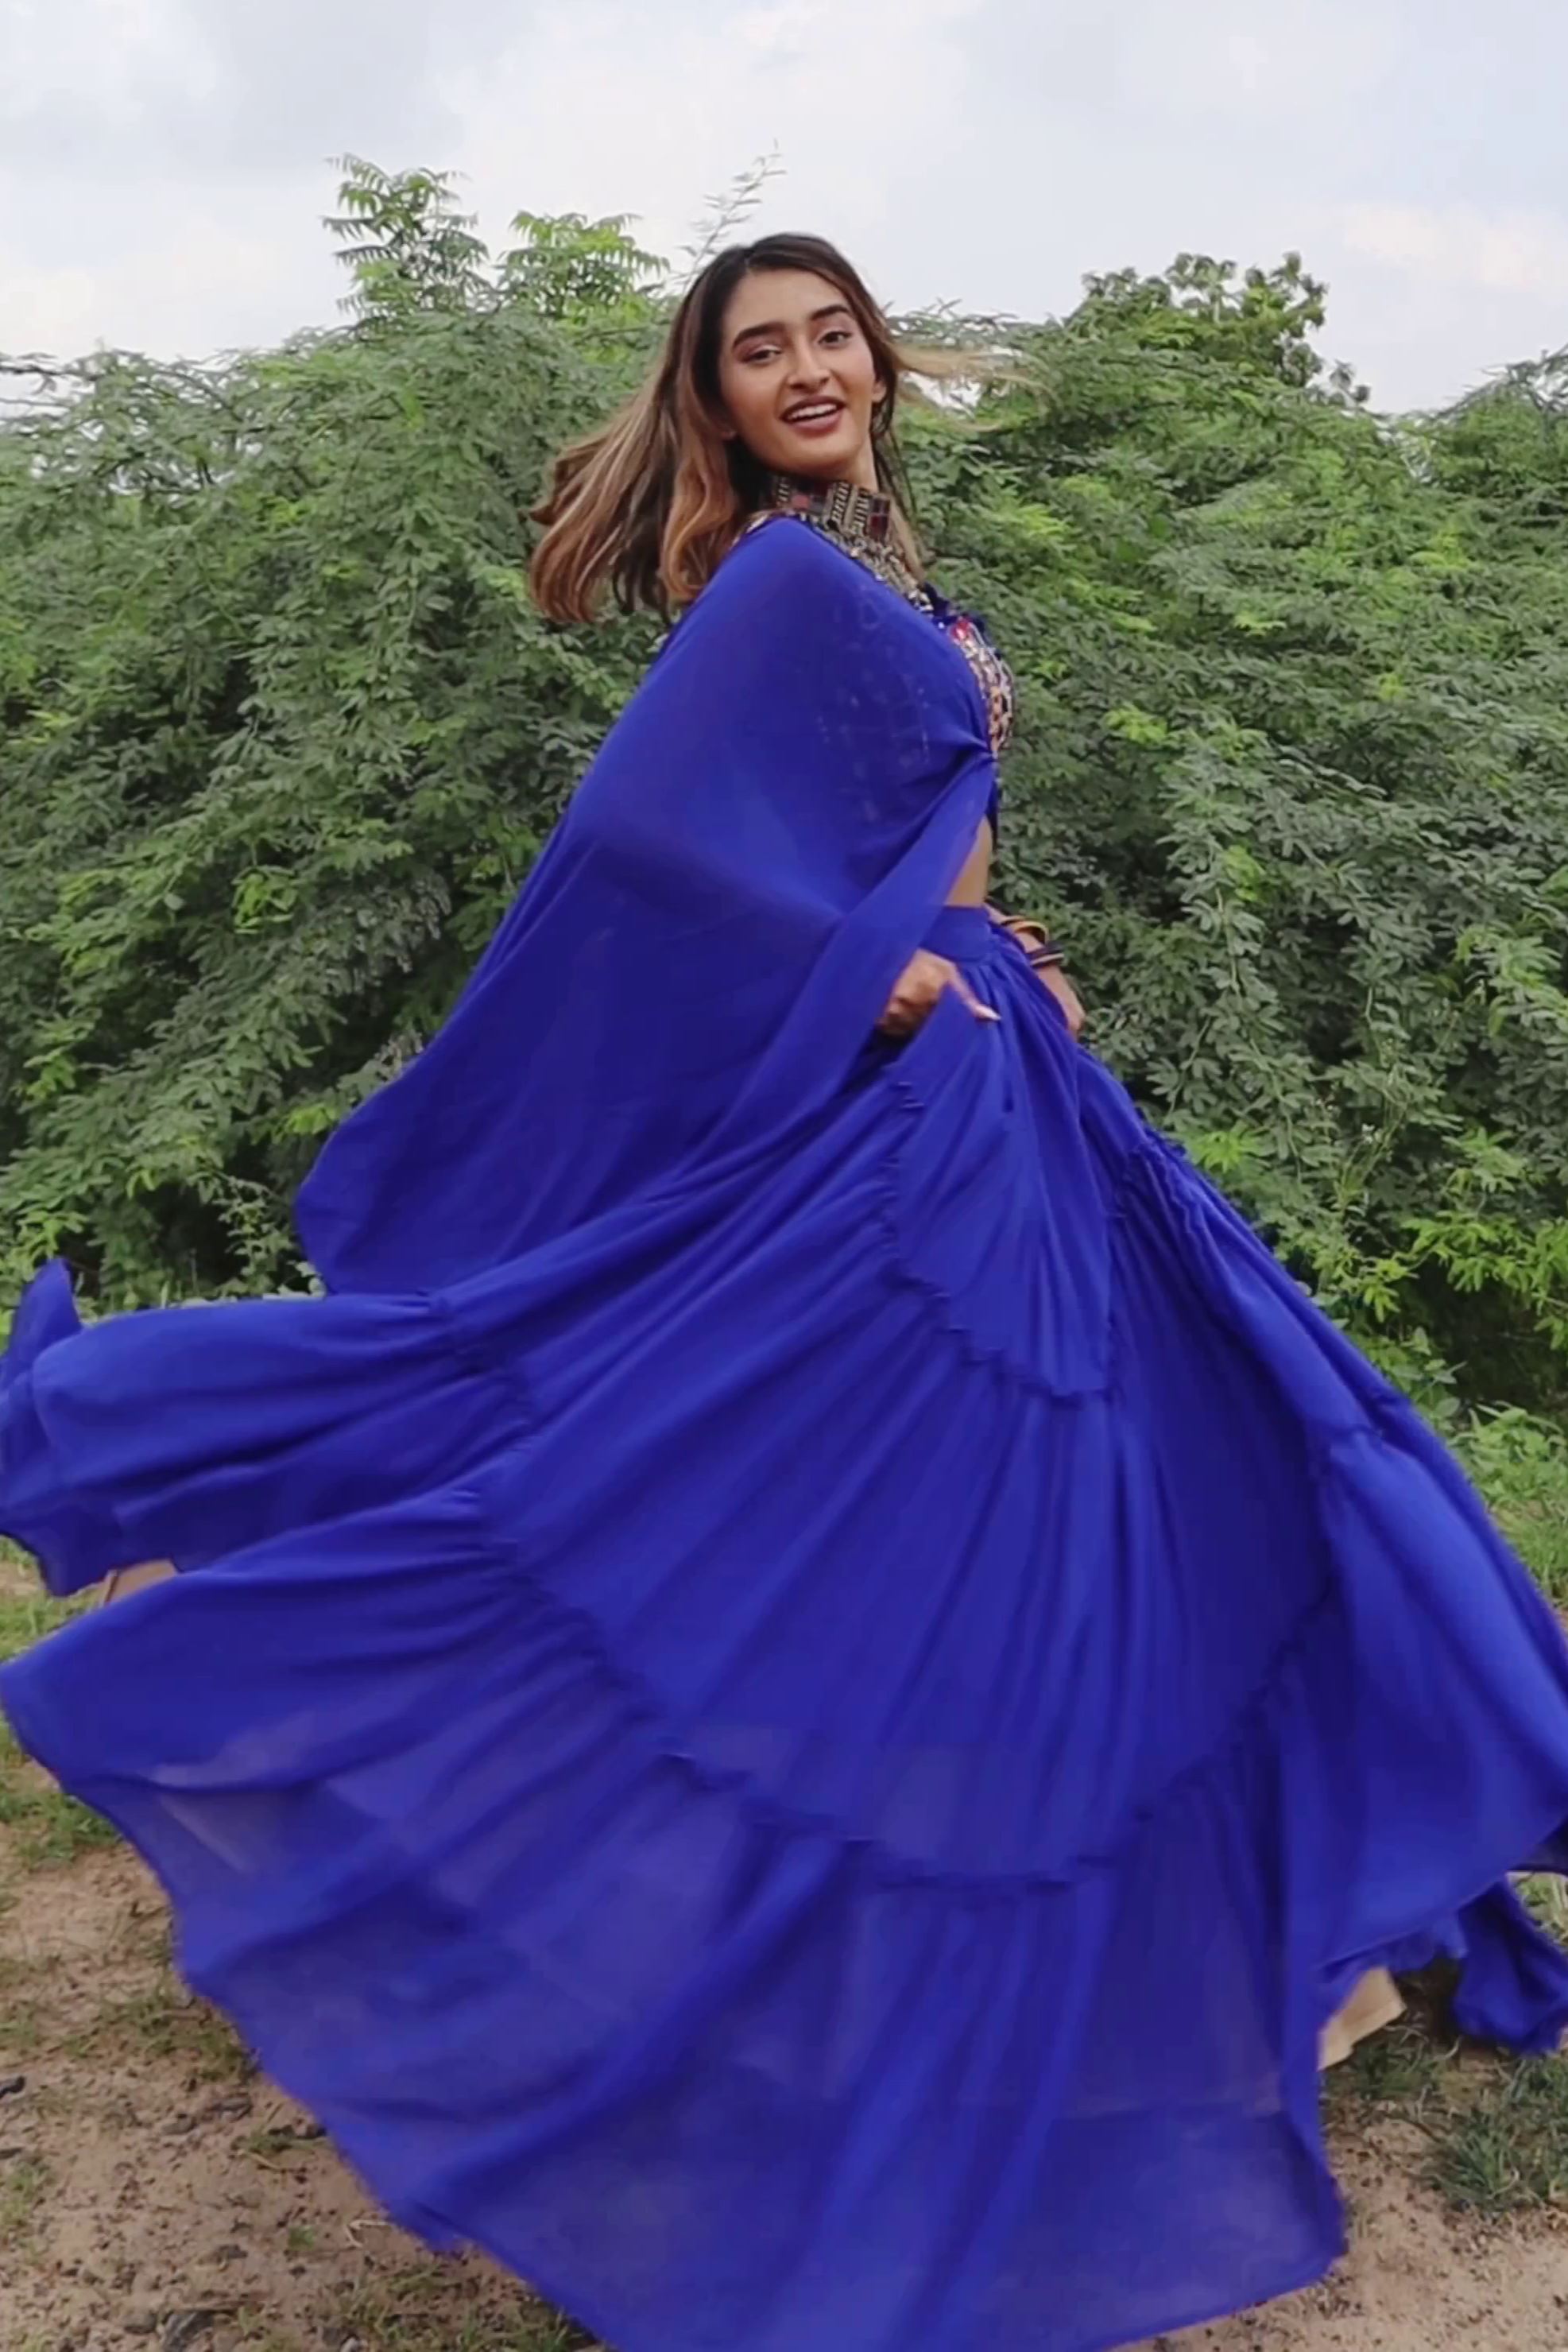 Royal Blue Lehenga Choli - Riya Turakhia's Choice